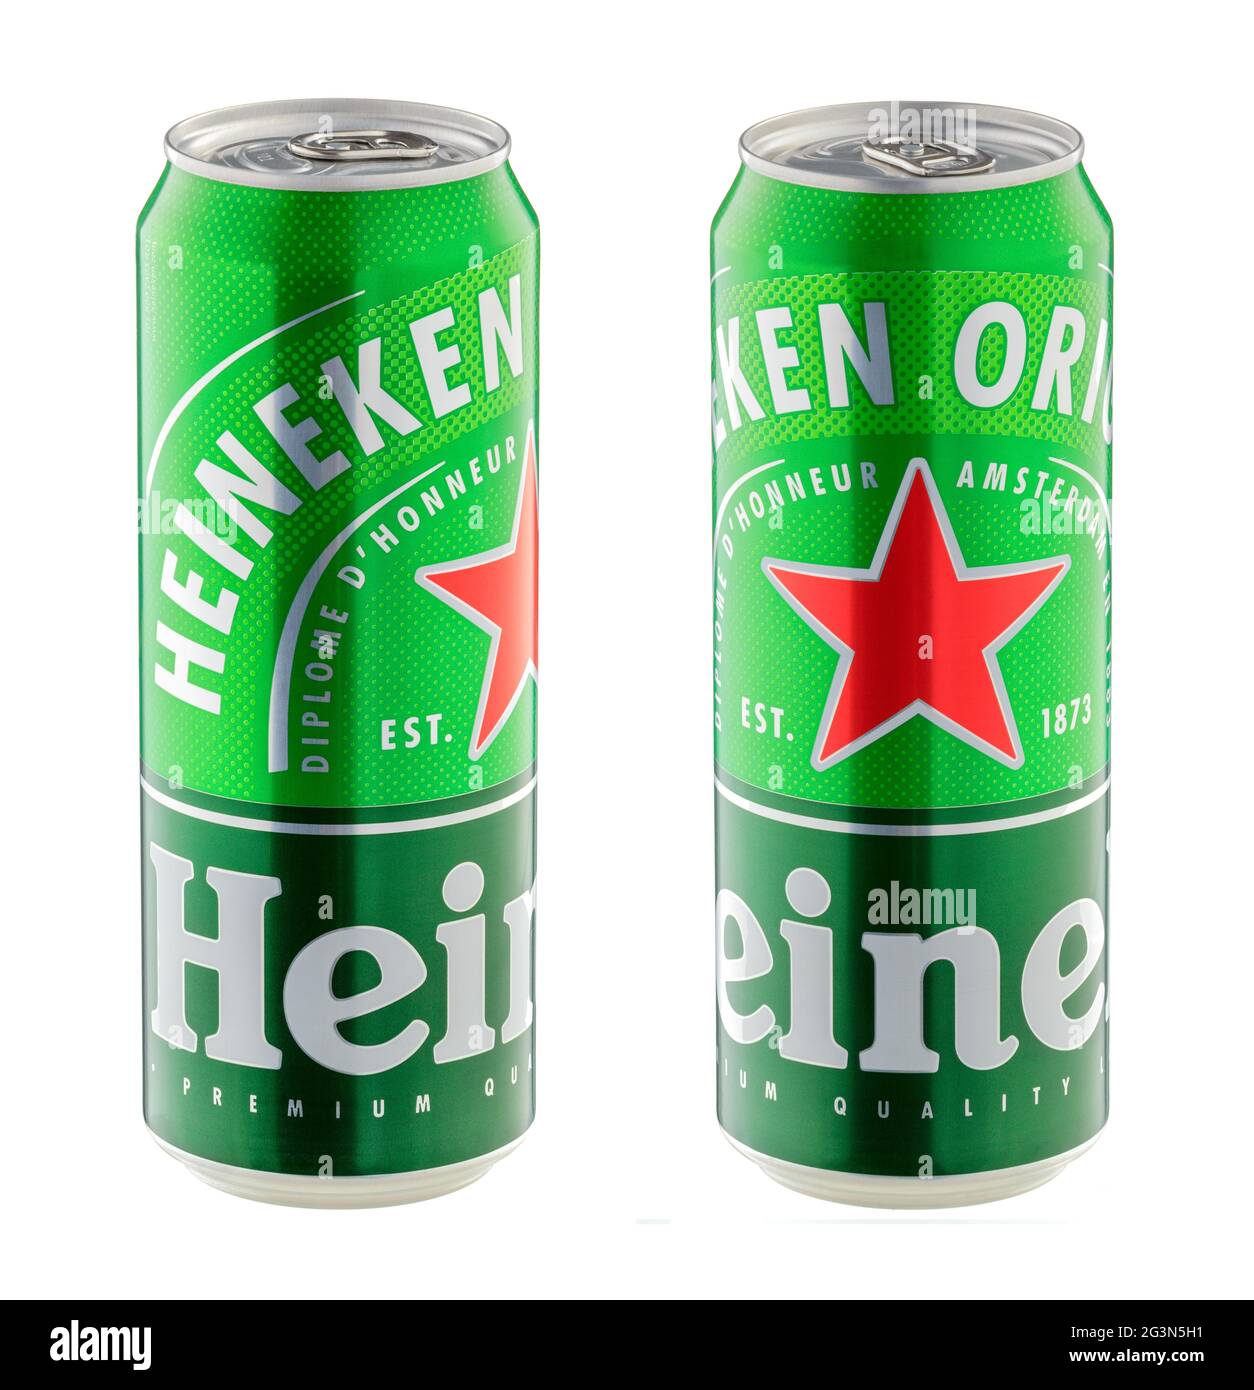 Lattine di birra Heineken da vicino isolate su sfondo bianco - Volgograd, Russia - 03 giugno 2021 Foto Stock